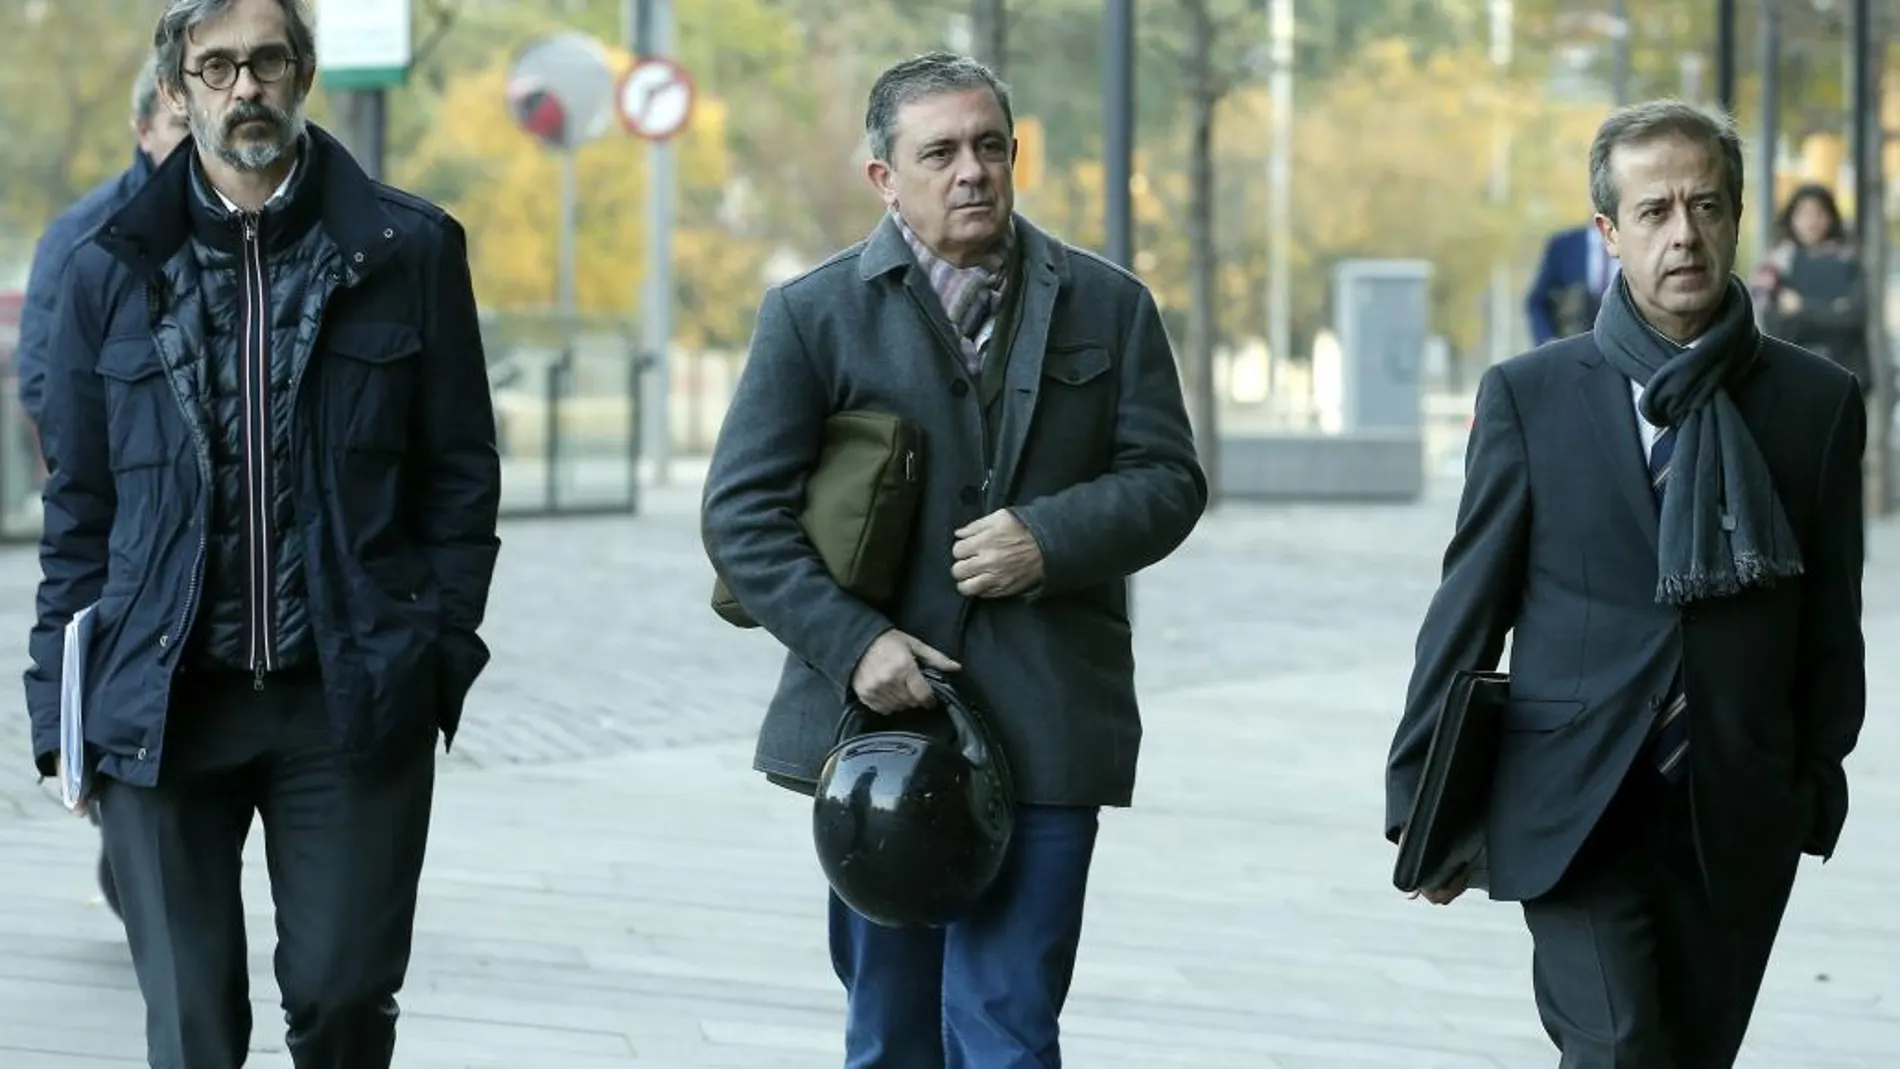 Jordi Pujol Ferrusola, primogénito del expresidente de la Generalitat (centro), acompañado de sus abogados Cristóbal Martell (izq.) y Javier Carrillo (dcha.), llega a los juzgados de guardia de Barcelona, donde ha acudido para entregar voluntariamente su pasaport